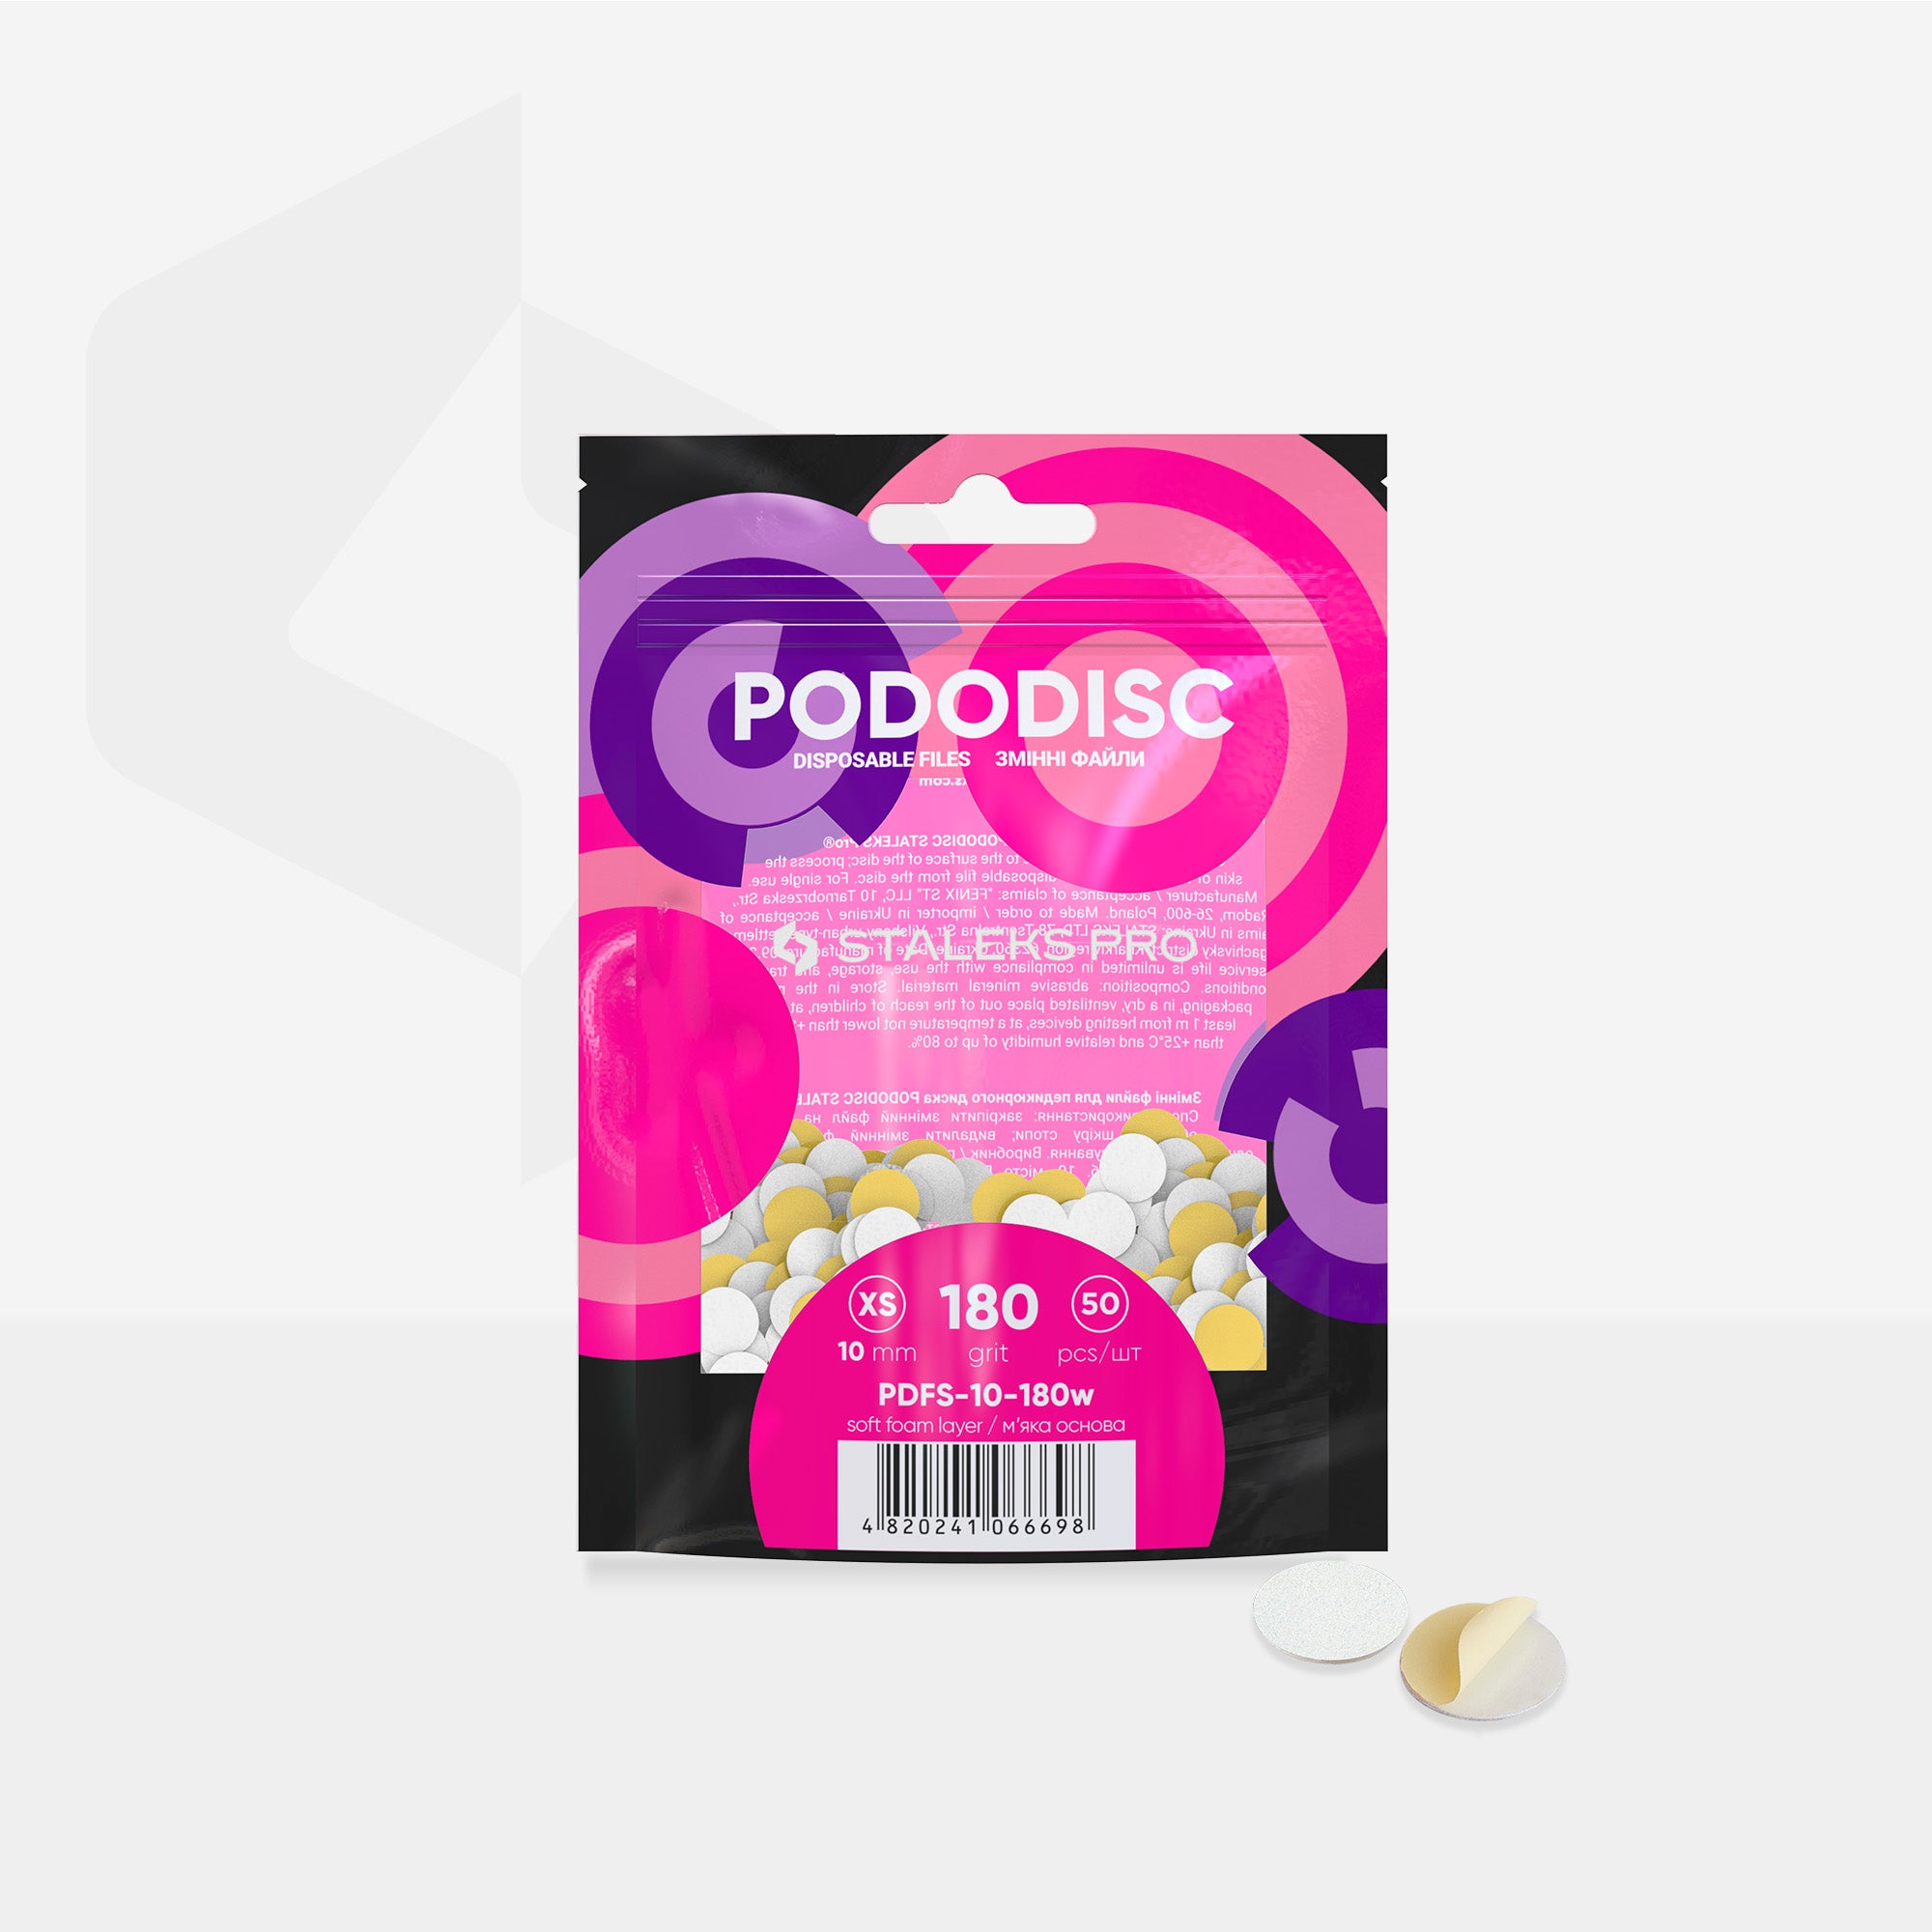 Lime di ricambio su base morbida per il disco per pedicure PODODISC STALEKS PRO XS (50 pz)